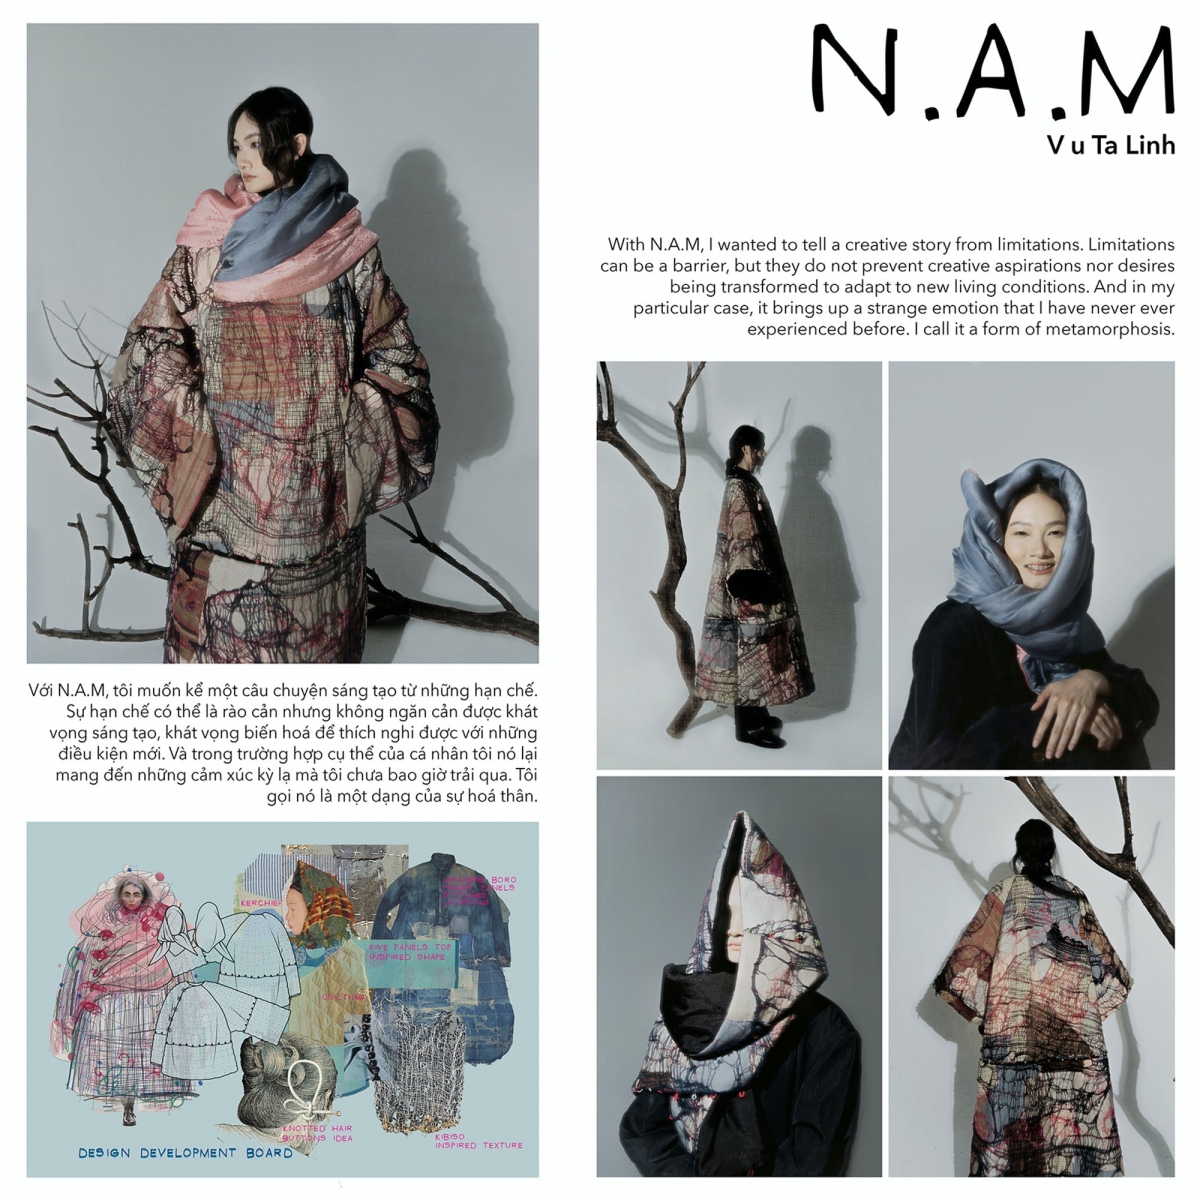 Tác phẩm "N.A.M" của Vũ Tá Linh đạt giải Nhất cuộc thi
 